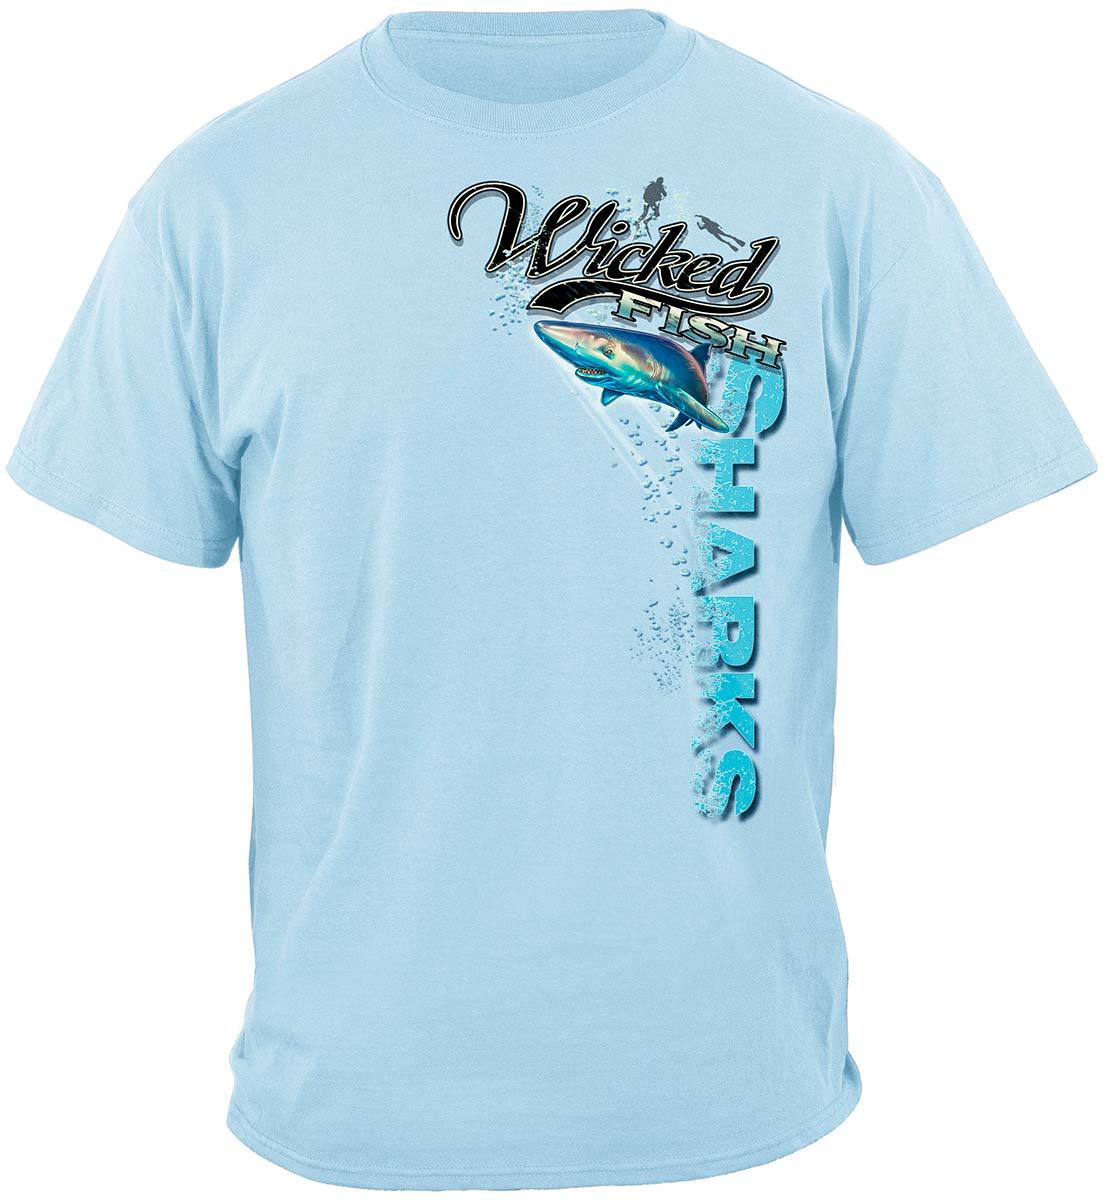 Wicked Fish Shark Premium Hooded Sweat Shirt